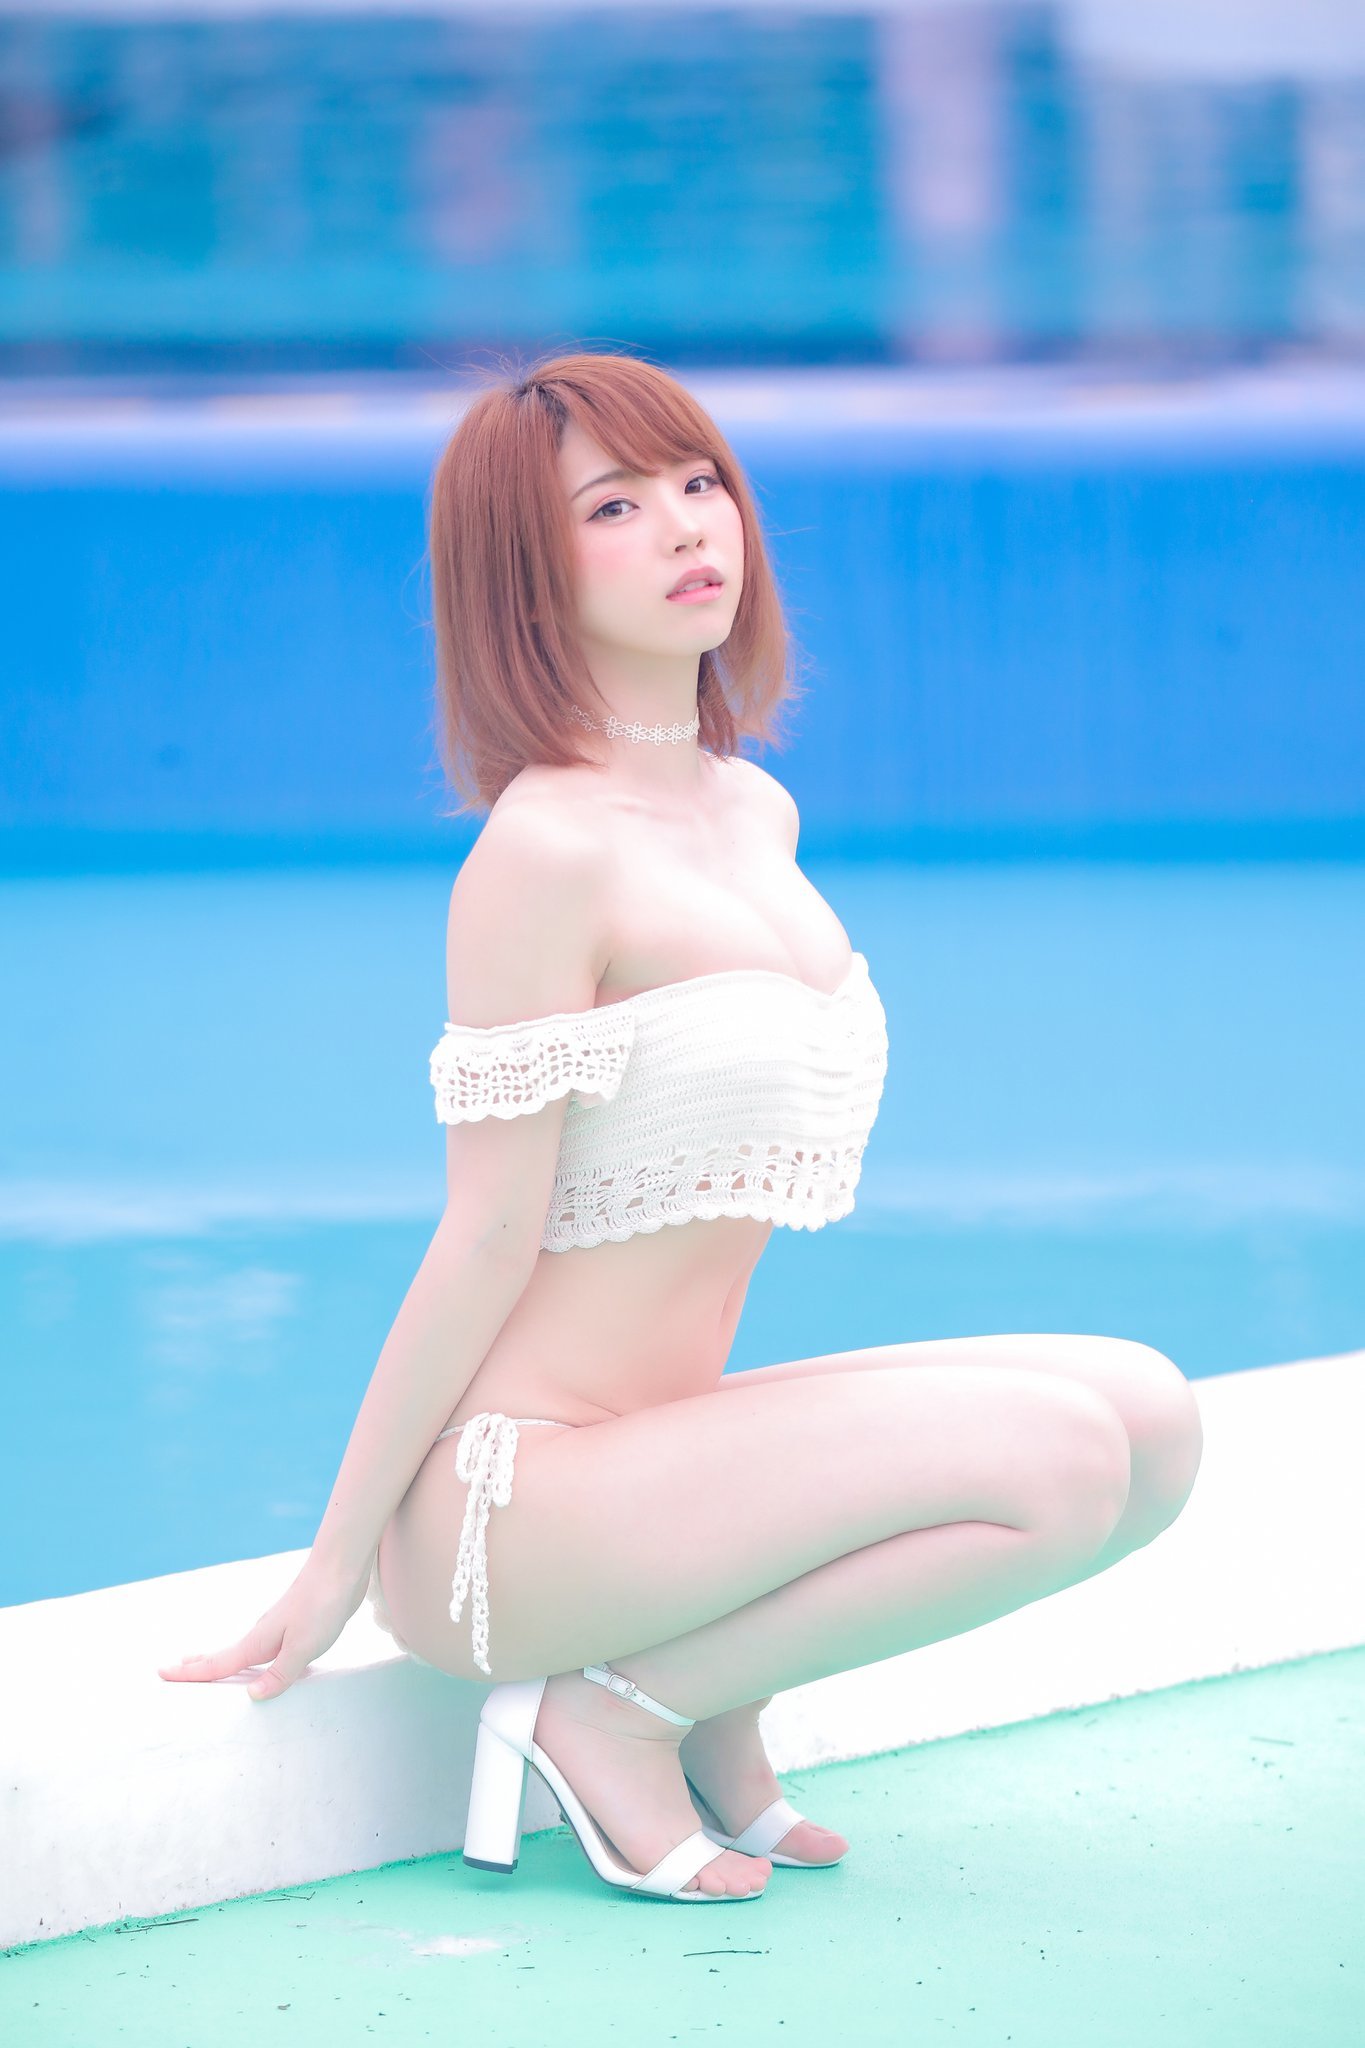 日本Coser Enako福利写真 妹子前凸后翘身材有料